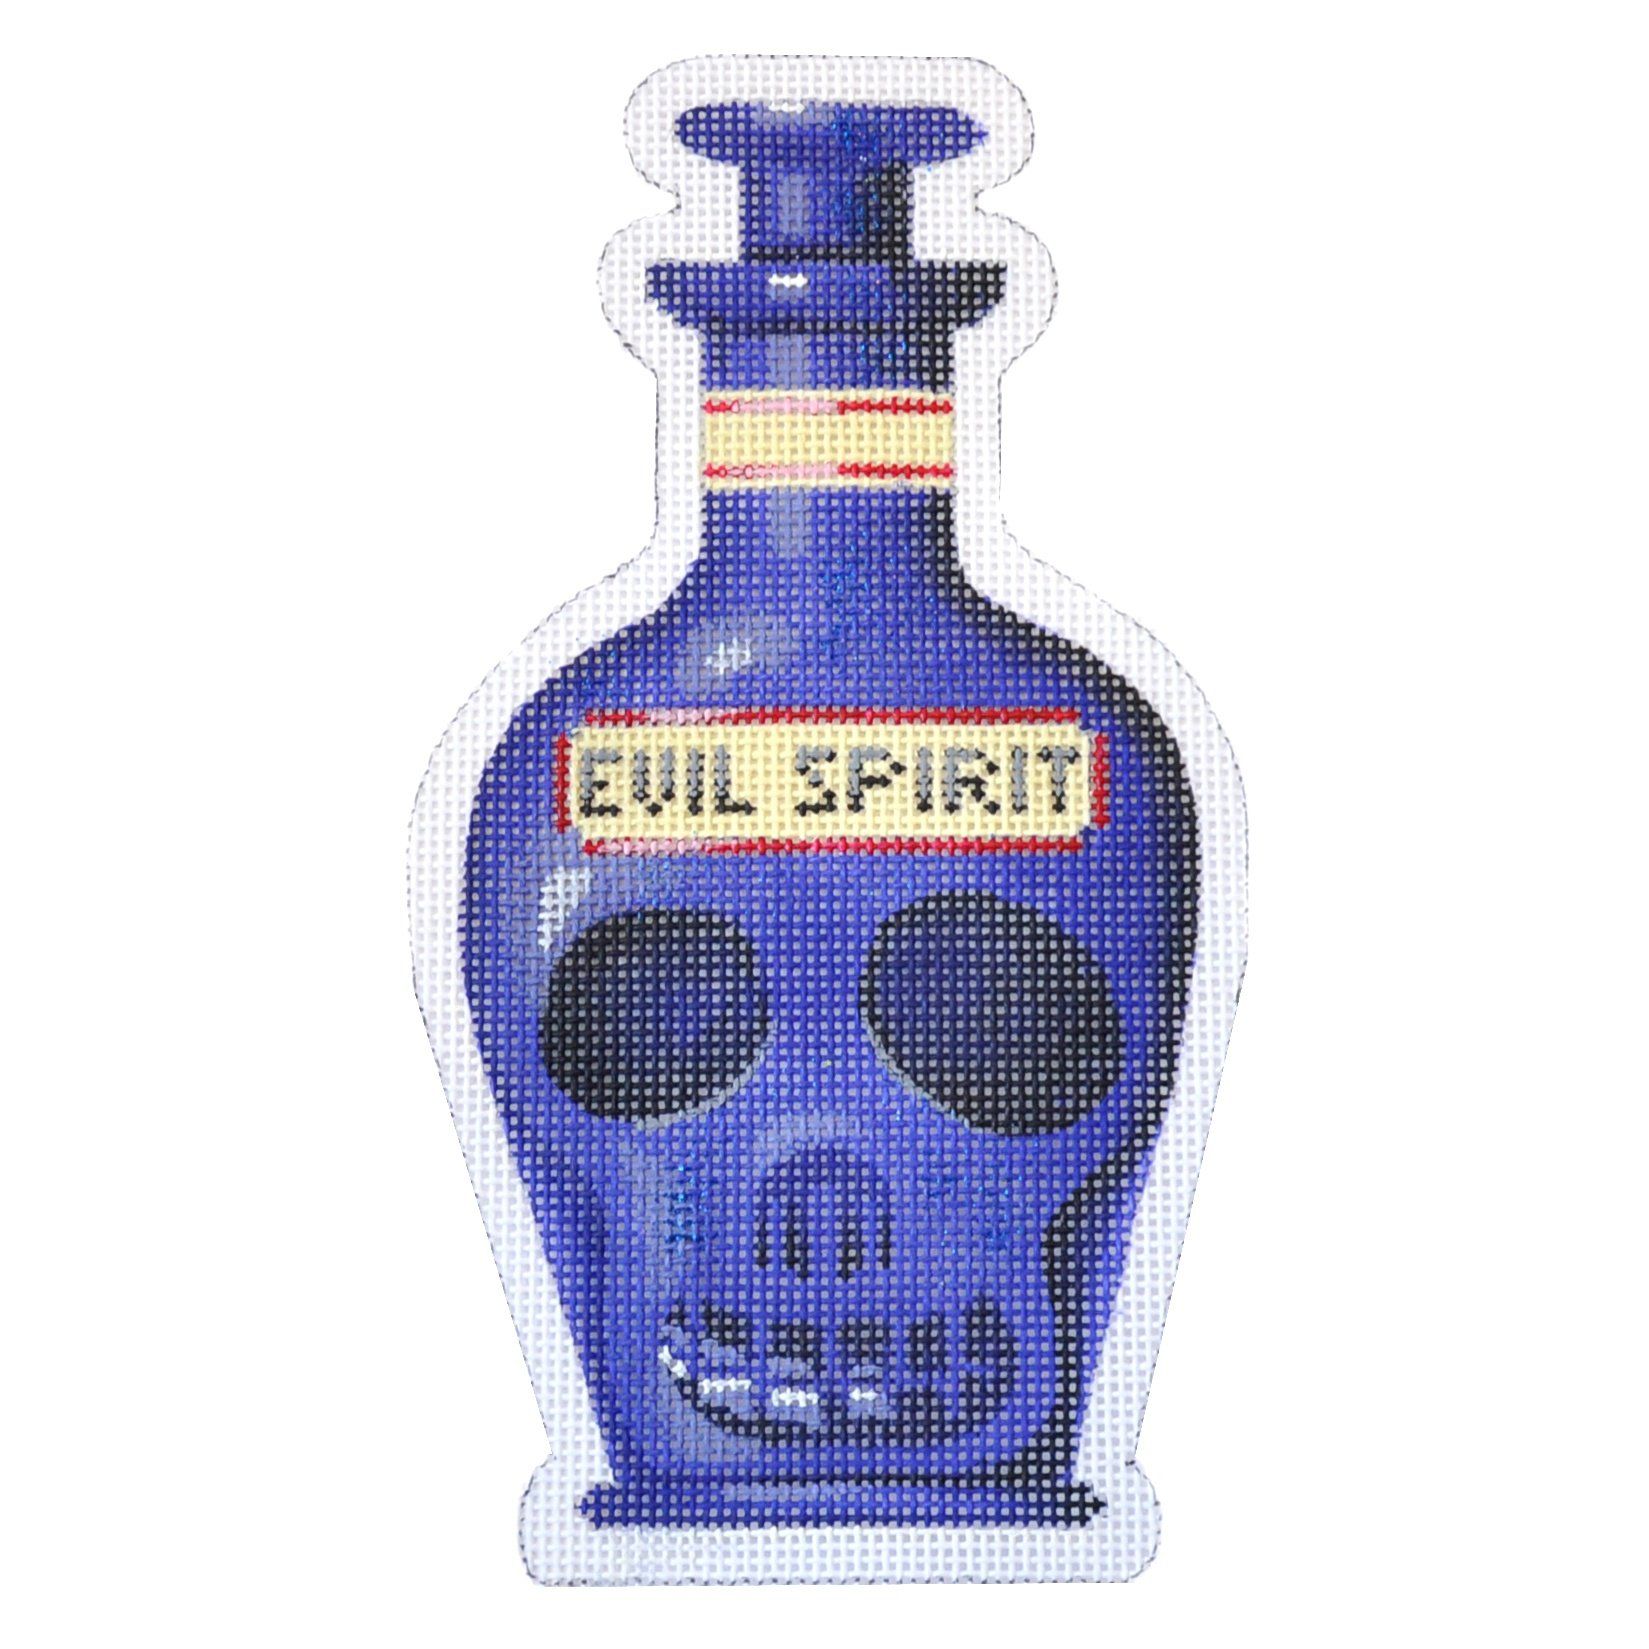 Poison Bottle - Evil Spirit Painted Canvas Kirk & Bradley 